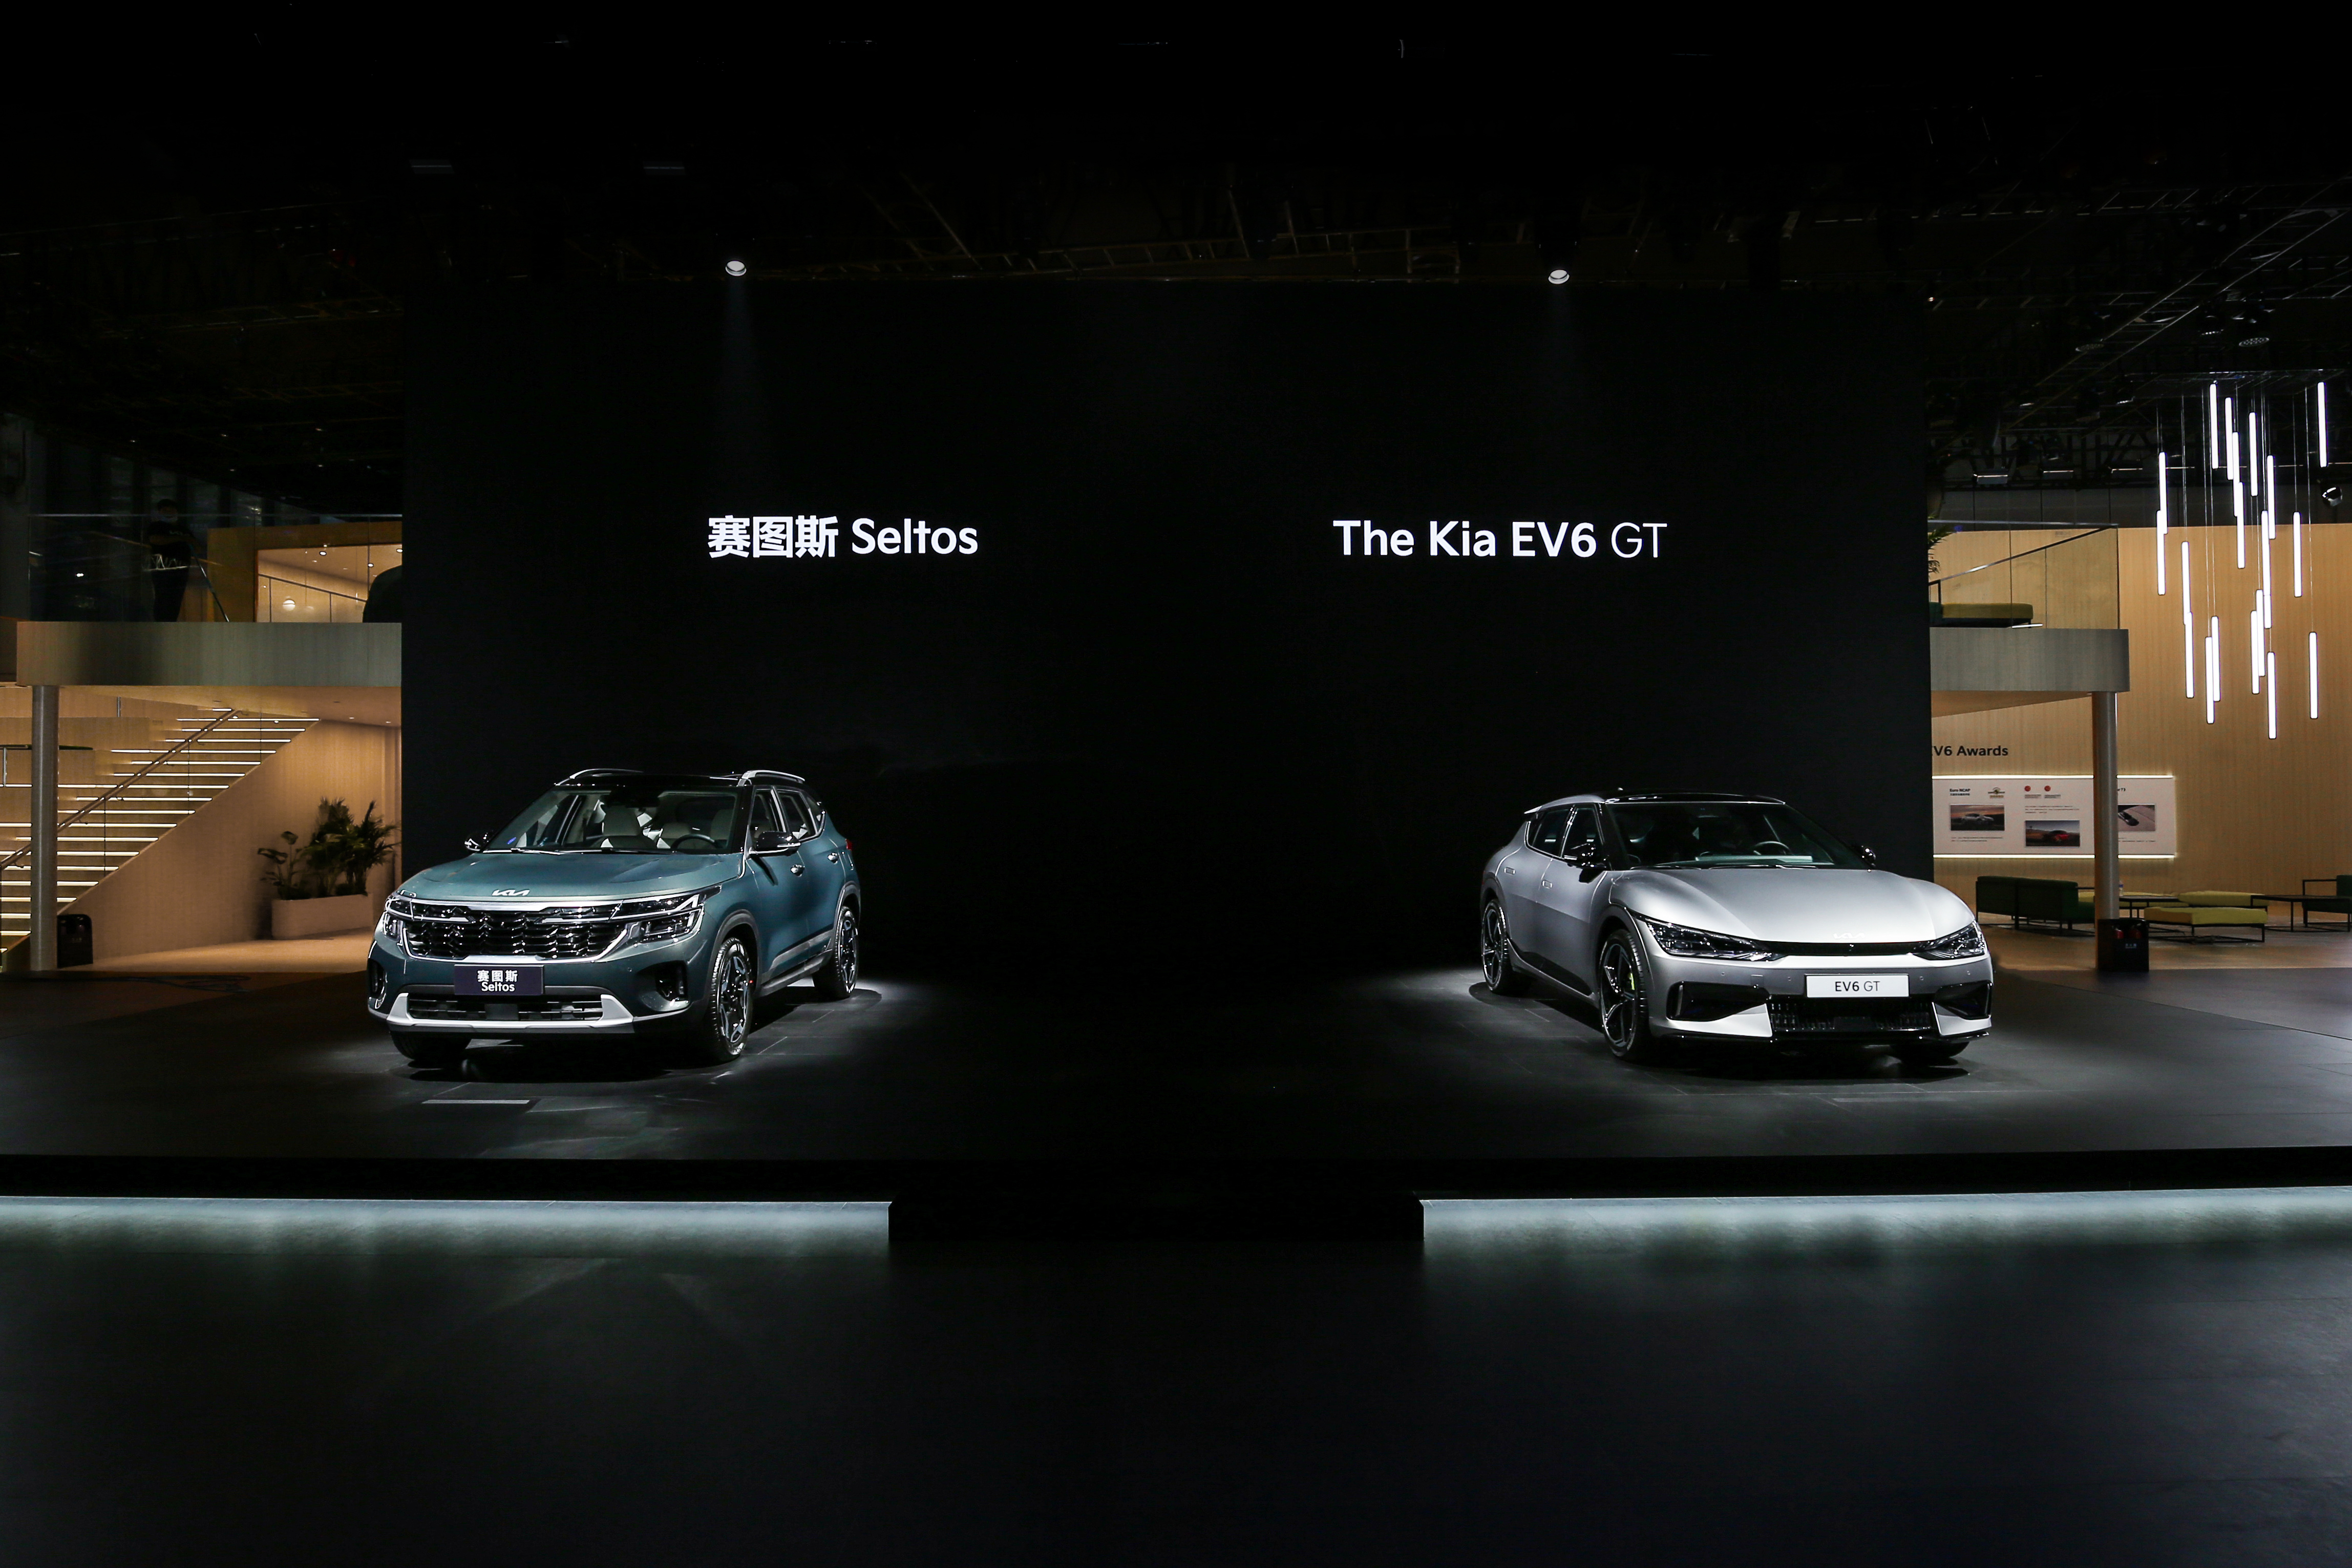 기아가 18일(현지시간) 중국 상하이 컨벤션 센터에서 개막한 ‘2023 상하이 국제 모터쇼’에서 중국 시장 대상의 전기차 비전을 공개하고 다양한 신차를 선보였다고 밝혔다. 사진은 기아가 2023 상하이 모터쇼에서 공개한 ‘셀토스 상품성 개선 모델’과 ‘EV6 GT’. 2023.4.18 연합뉴스